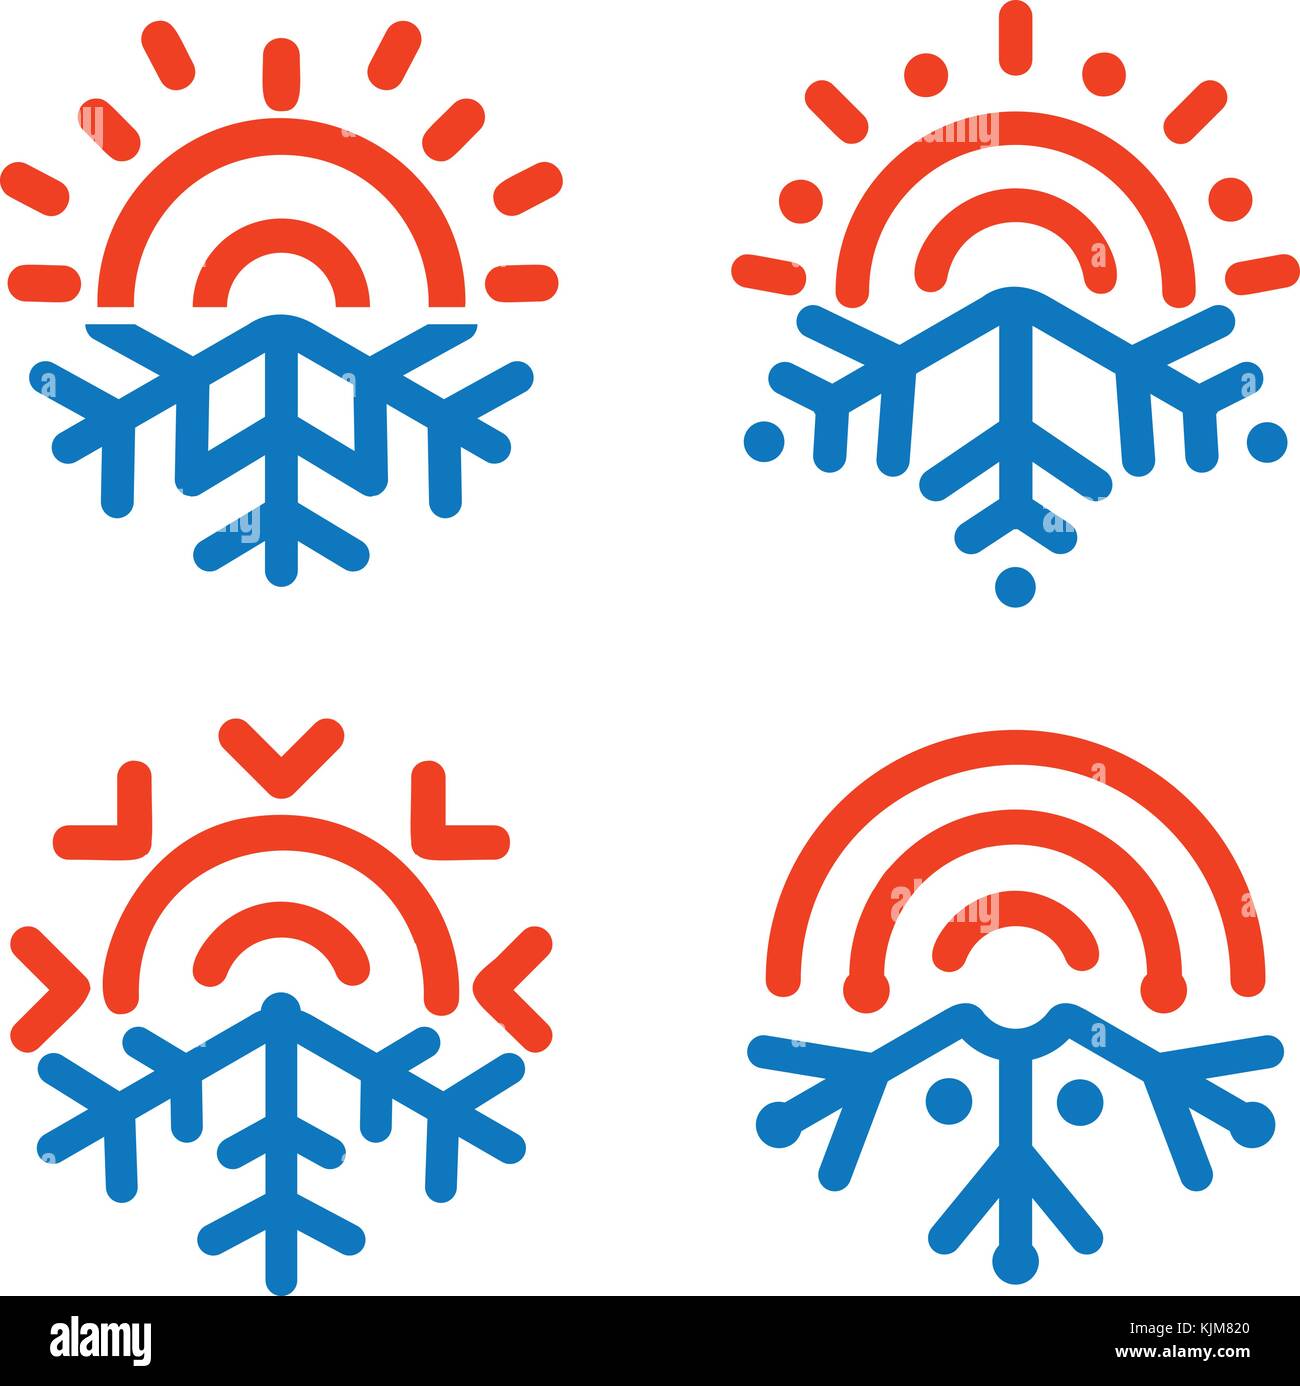 Sun und Schneeflocke Embleme. Wetter, Temperatur Symbol. Einfrieren, Heizung, sonnig, frosty Vektor Symbole. jedem Wetter abstrakte Logo. Klimaanlage, Klimaanlage mit Regelautomatik Infografik Designelemente. Stock Vektor